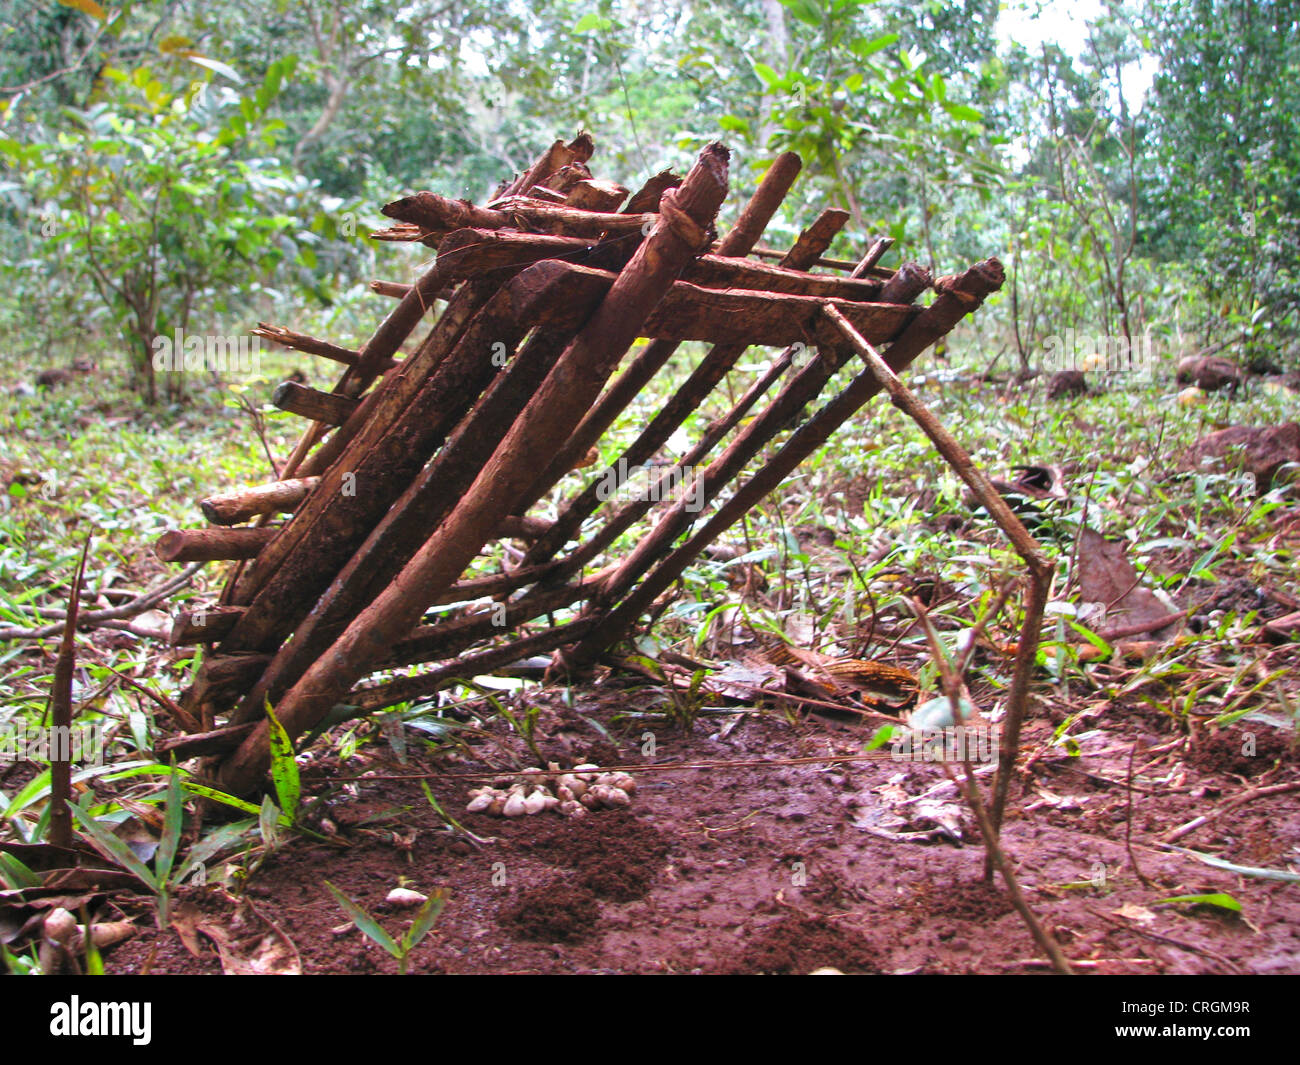 La trampa de pájaro simple hecha de pequeños palos de madera en una zona rural, Haití, Grande Anse, Jeremie Foto de stock